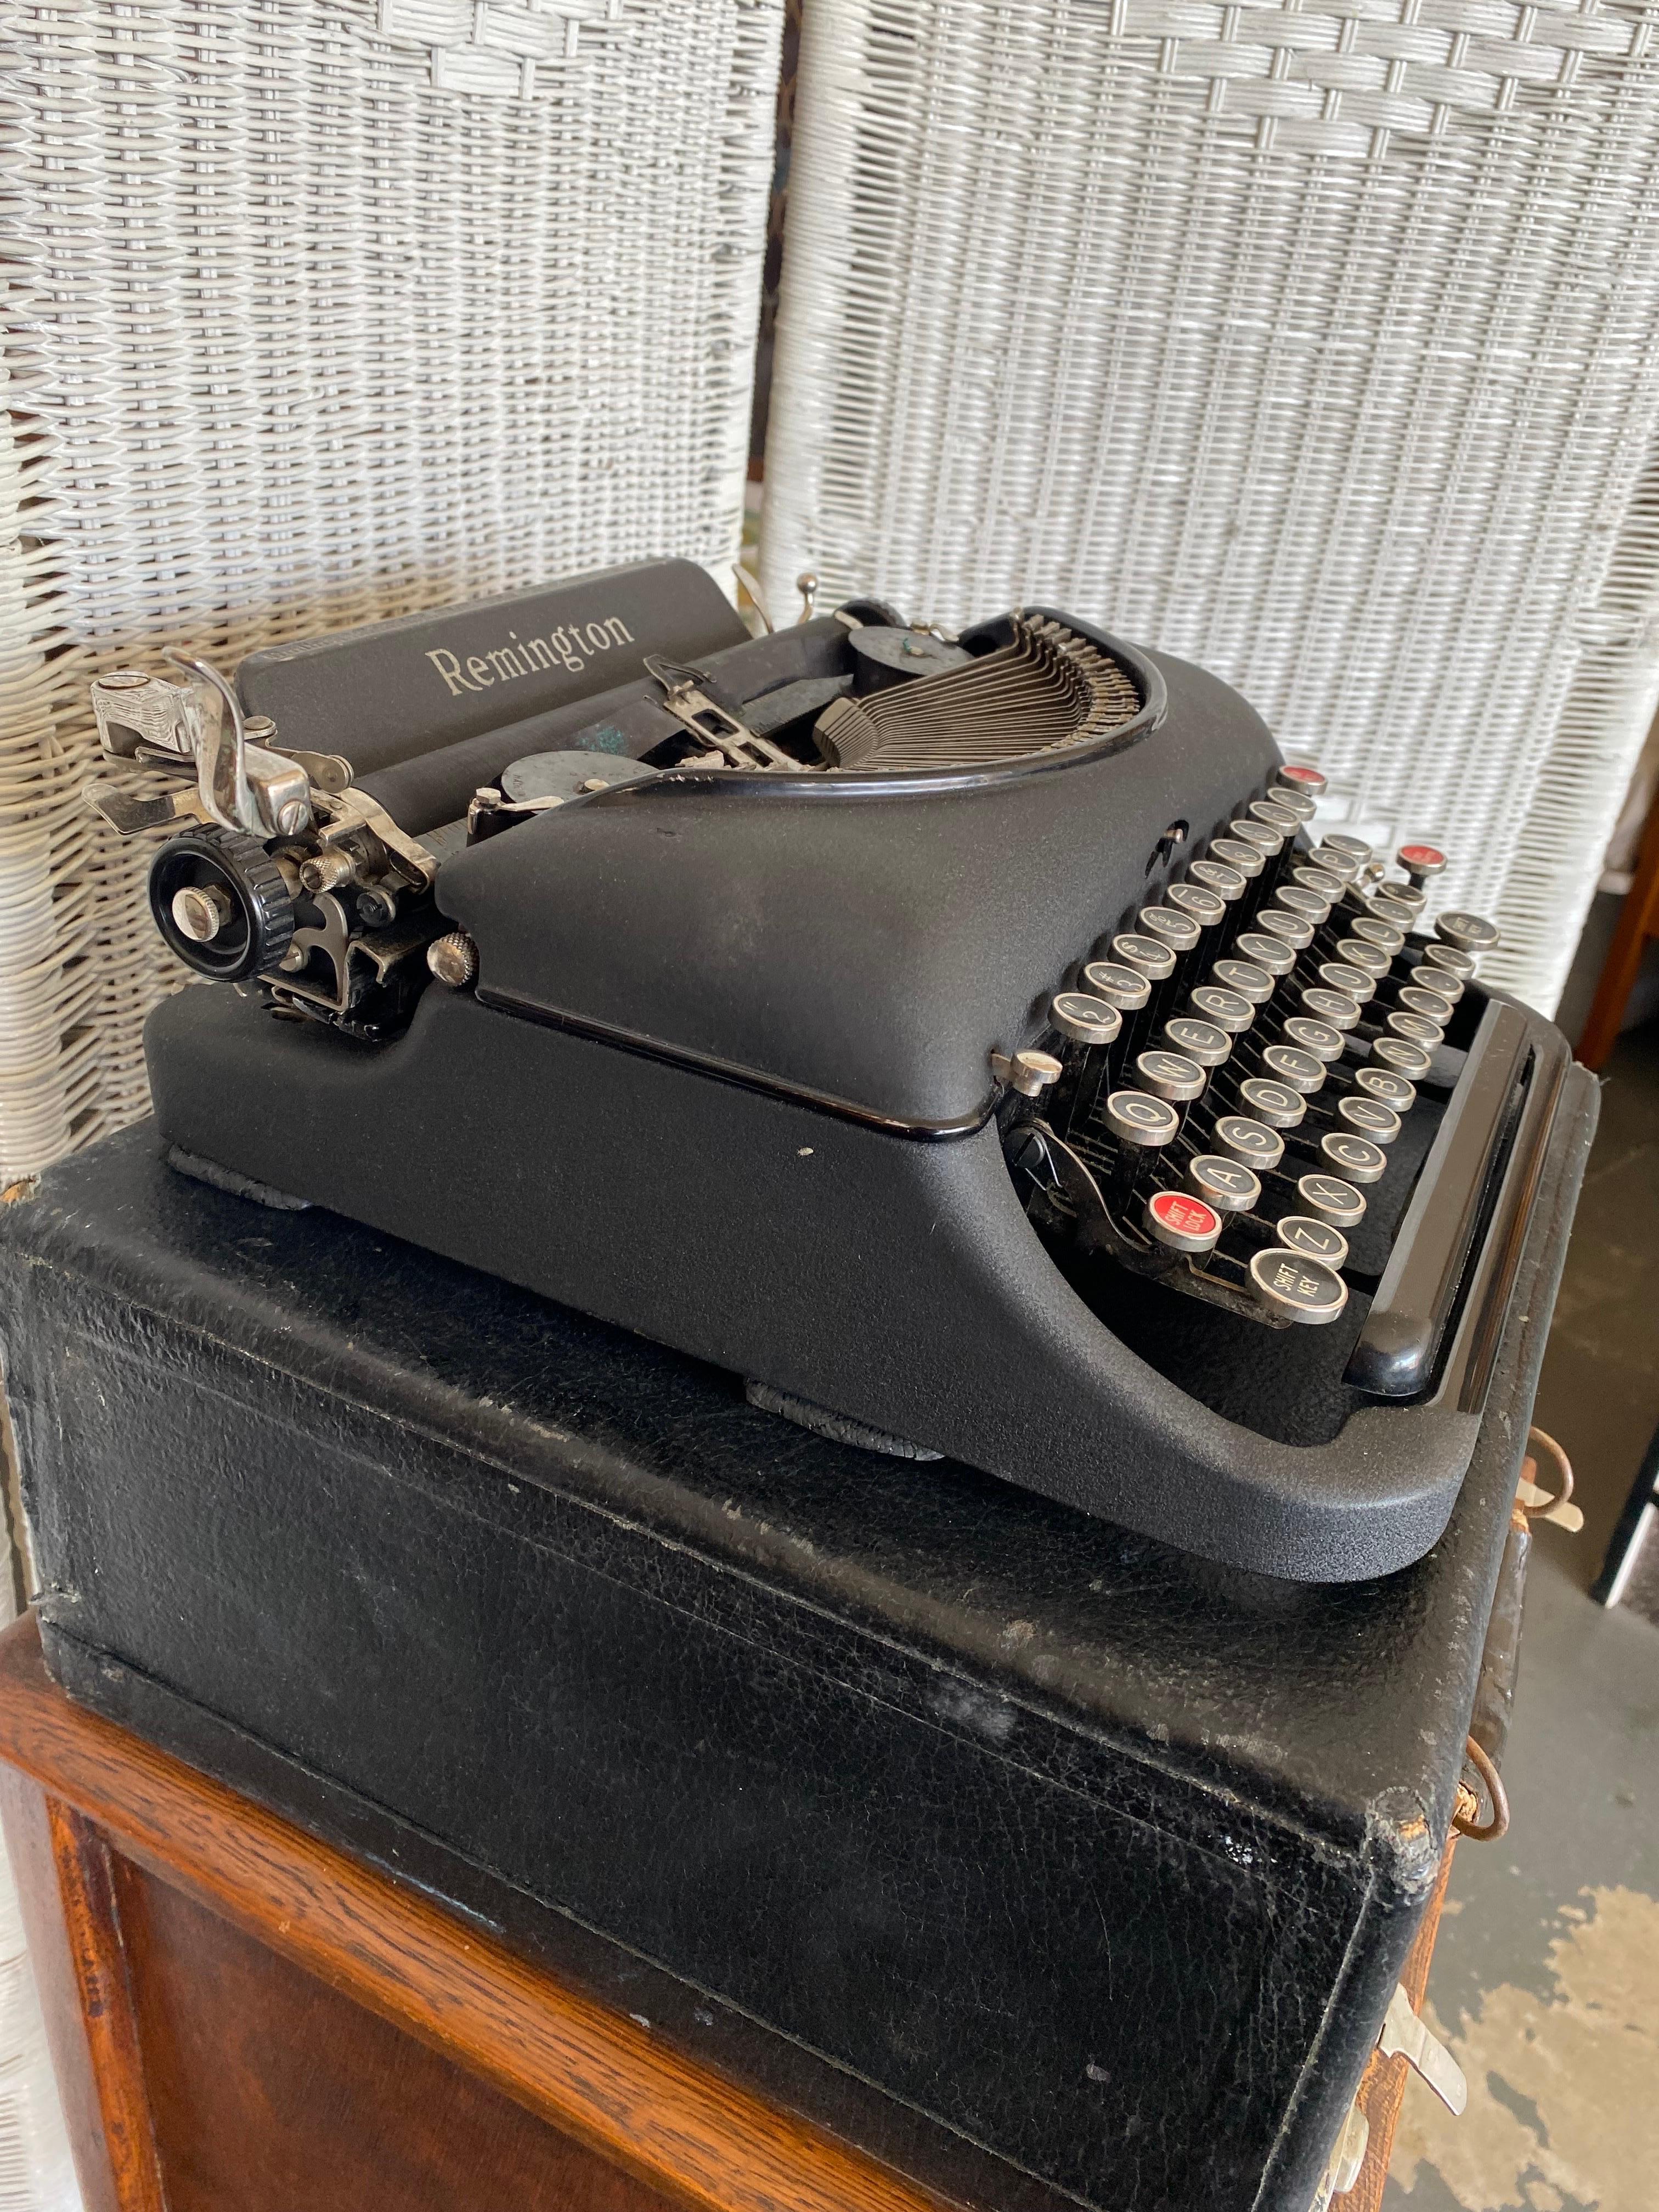 used typewriter